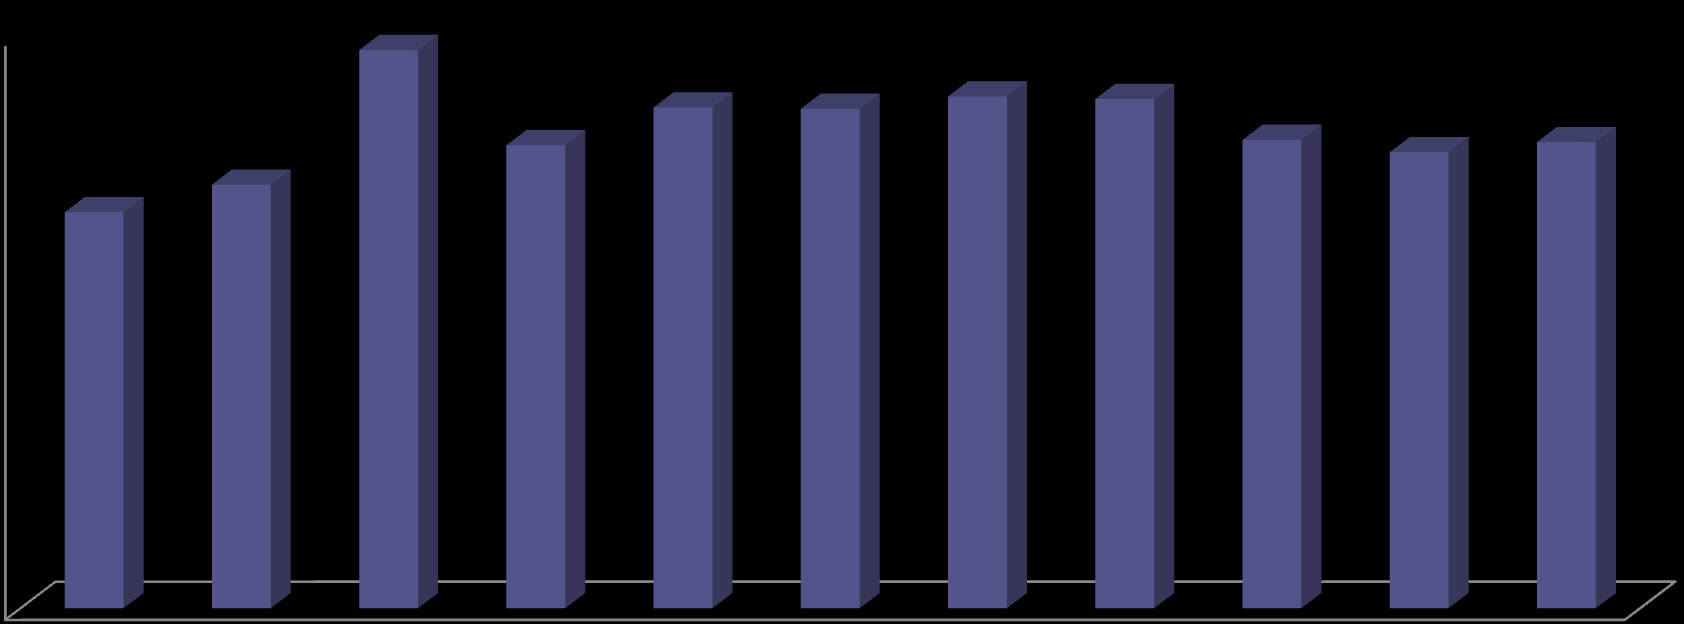 Fonte: Armazém SIAFI-MG 1 - Índice de Eficiência Fiscal Operacional: participação relativa das despesas operacionais em relação à despesa total.